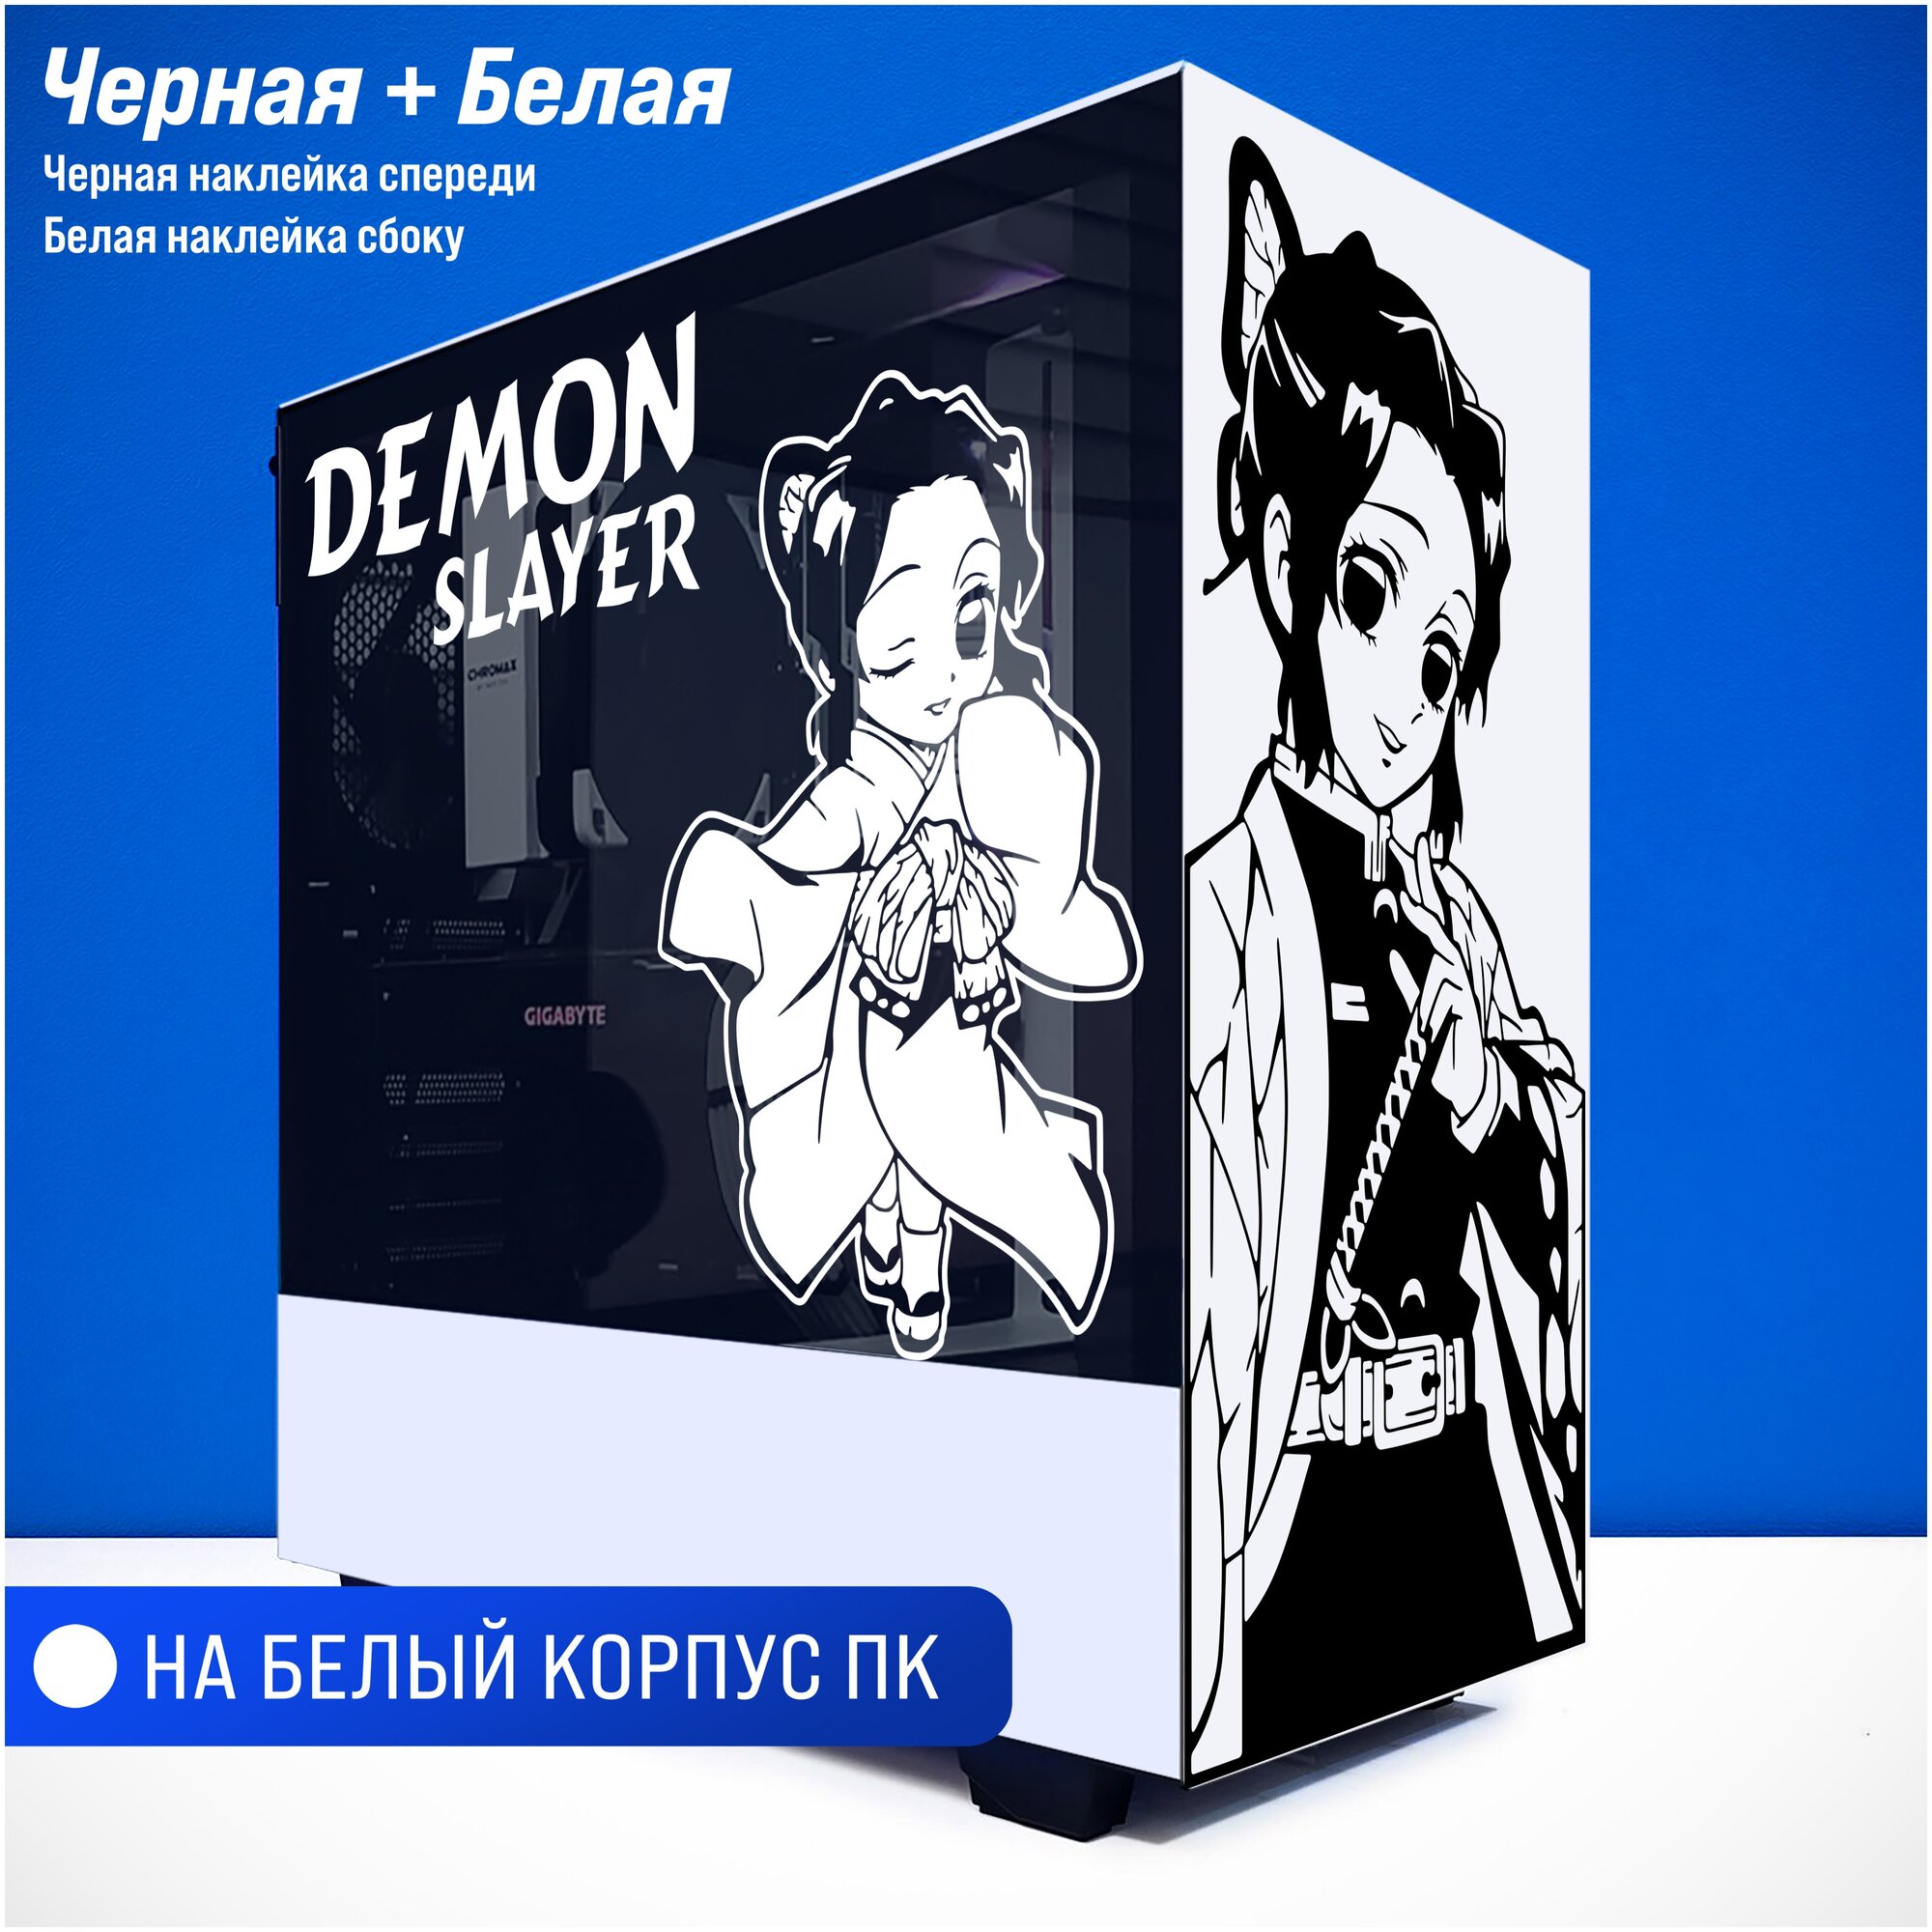 Наклейка на корпус ПК - "Demon Slayer - C"